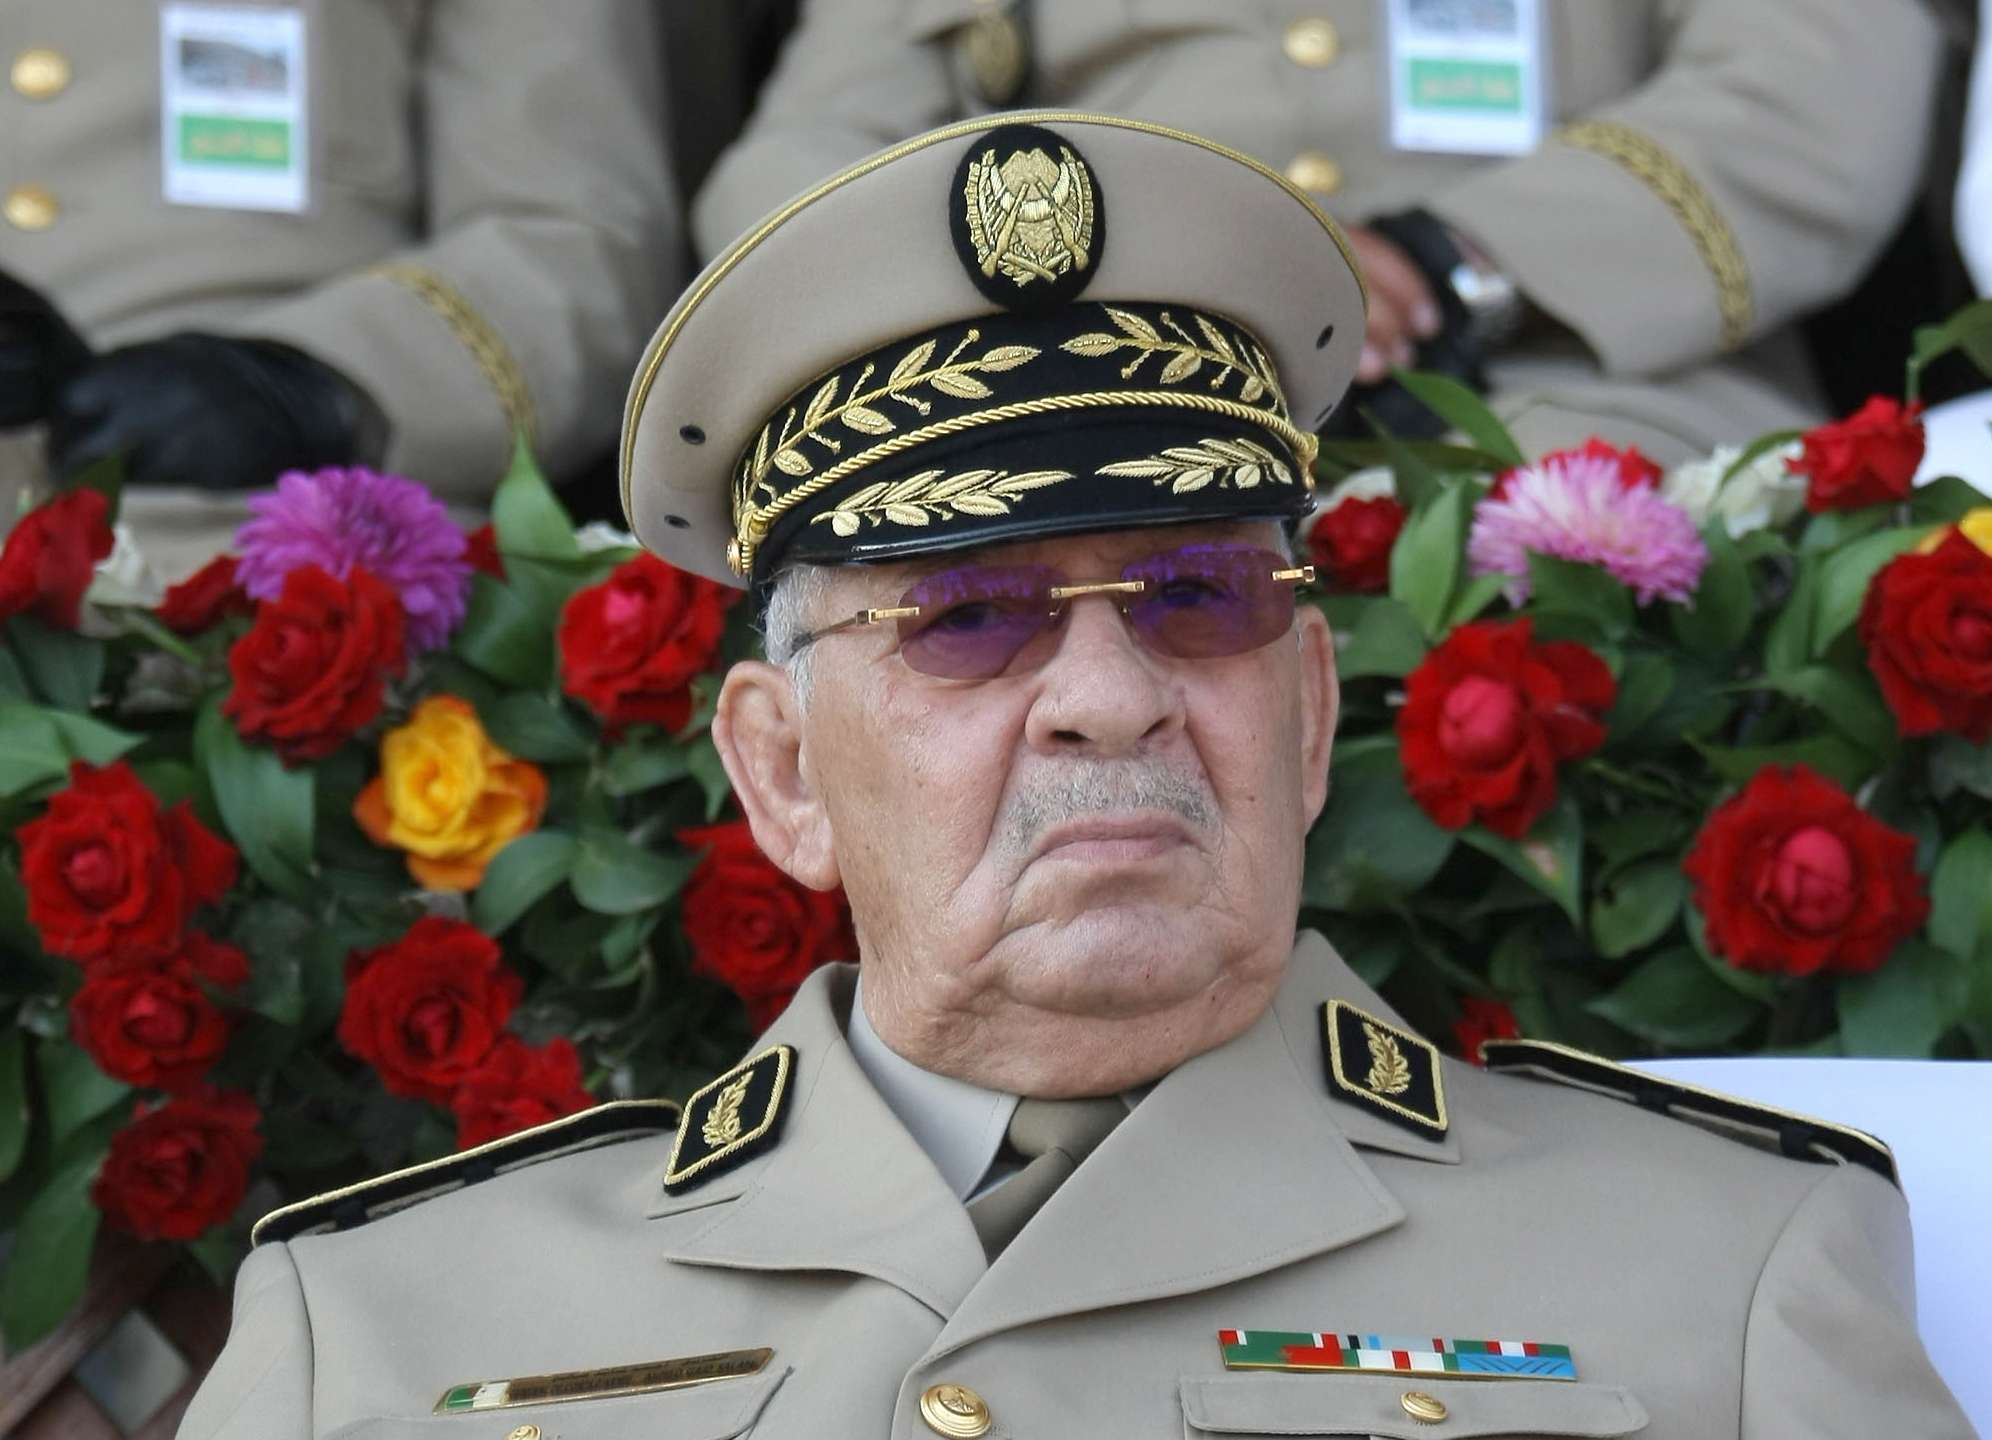 الفريق أحمد قايد صالح رئيس أركان الجيش الجزائري